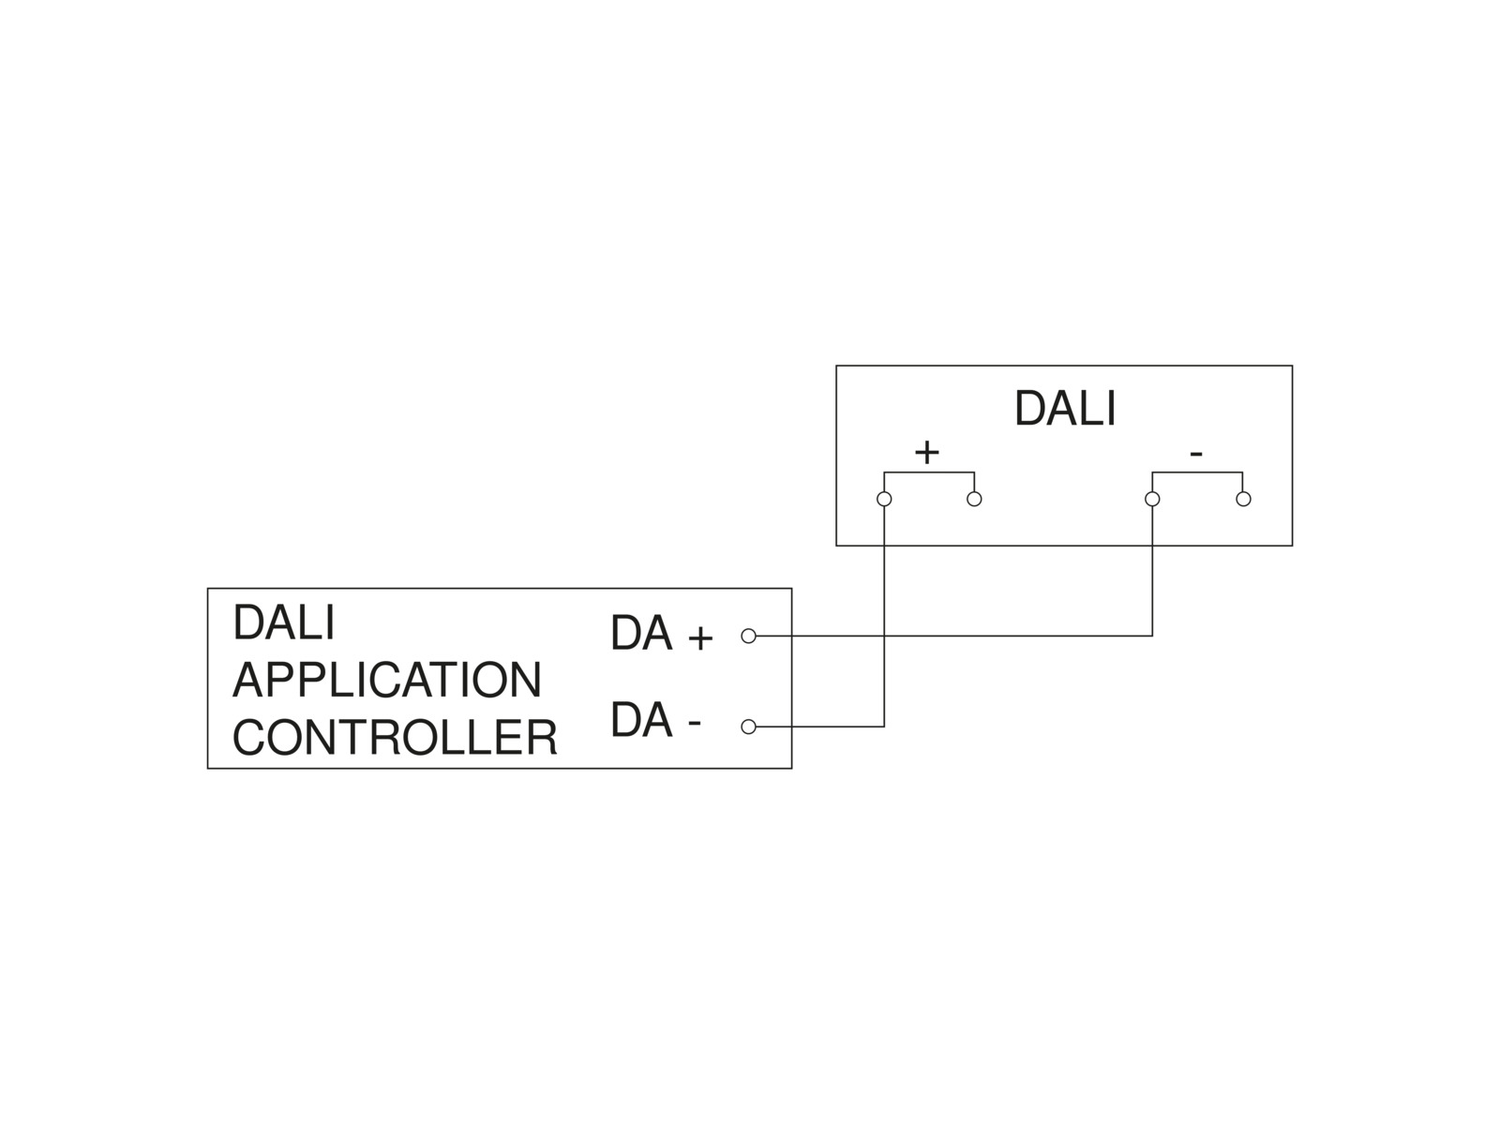 Senzor pohybu IS 3360 MX Highbay DALI-2 vstupní zařízení, povrchový, bílý